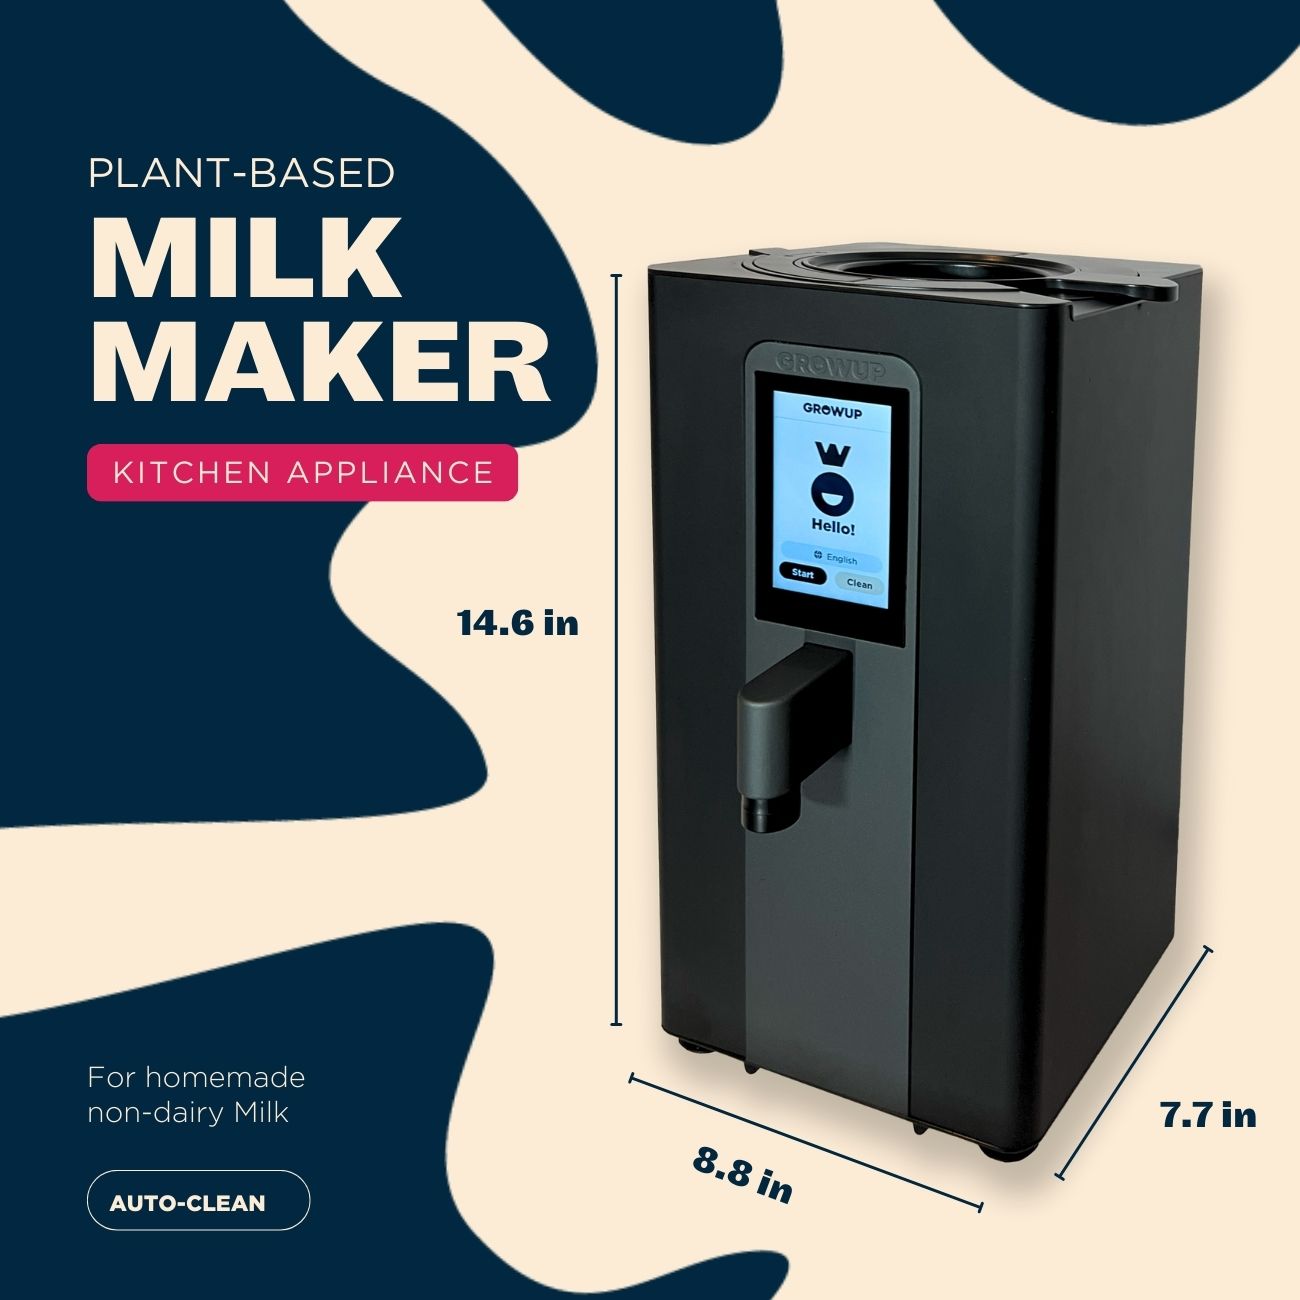 Plant-Based Milk Maker